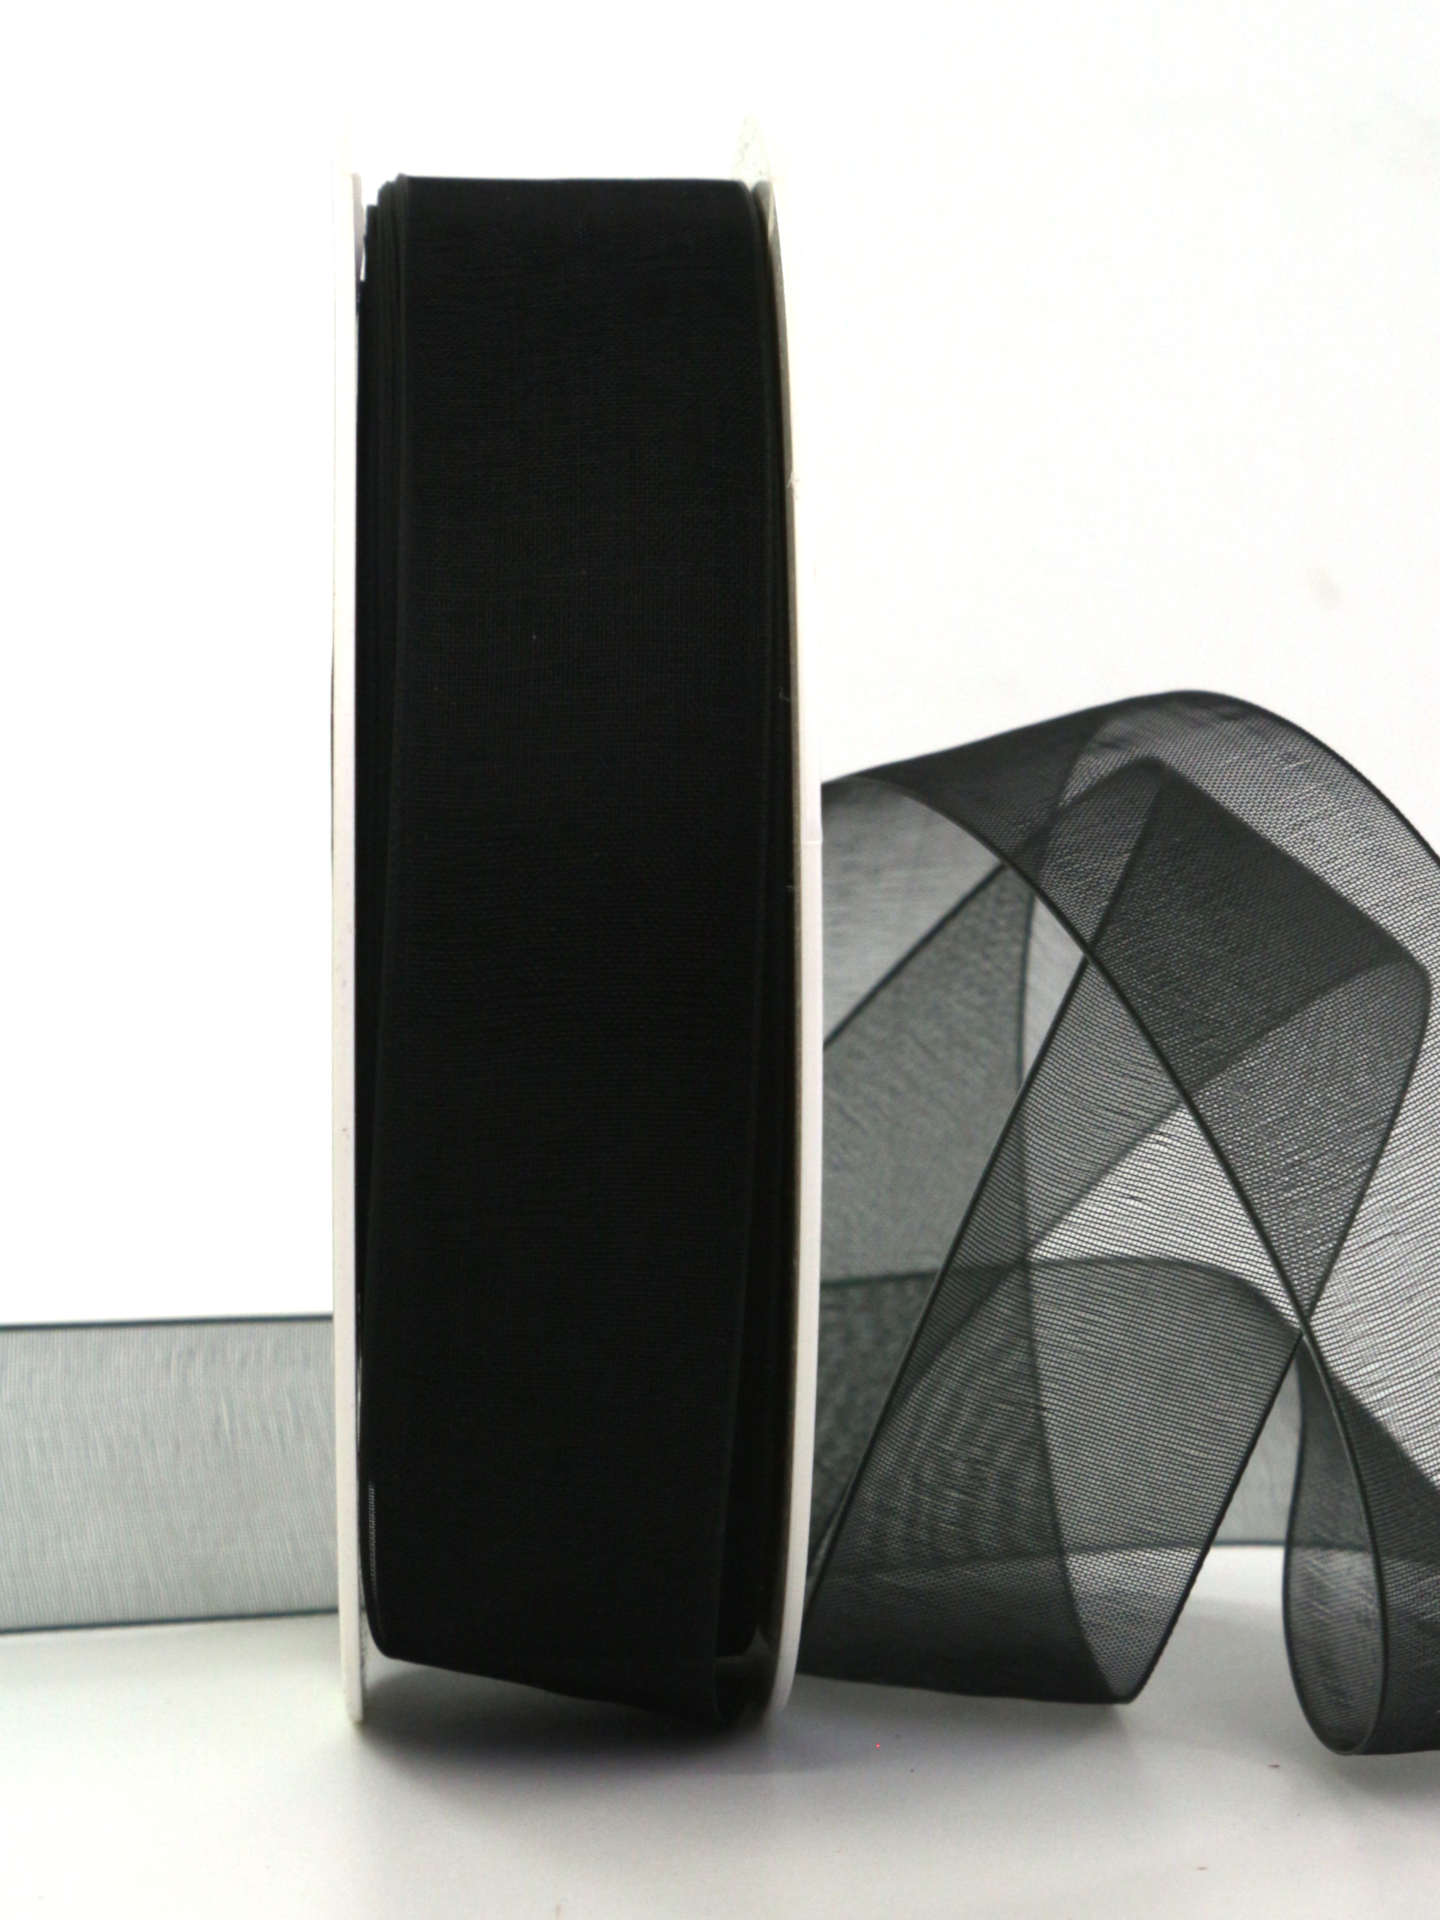 Organzaband mit Webkante, schwarz, 25 mm breit, 50 m Rolle - trauerband, trauerflor